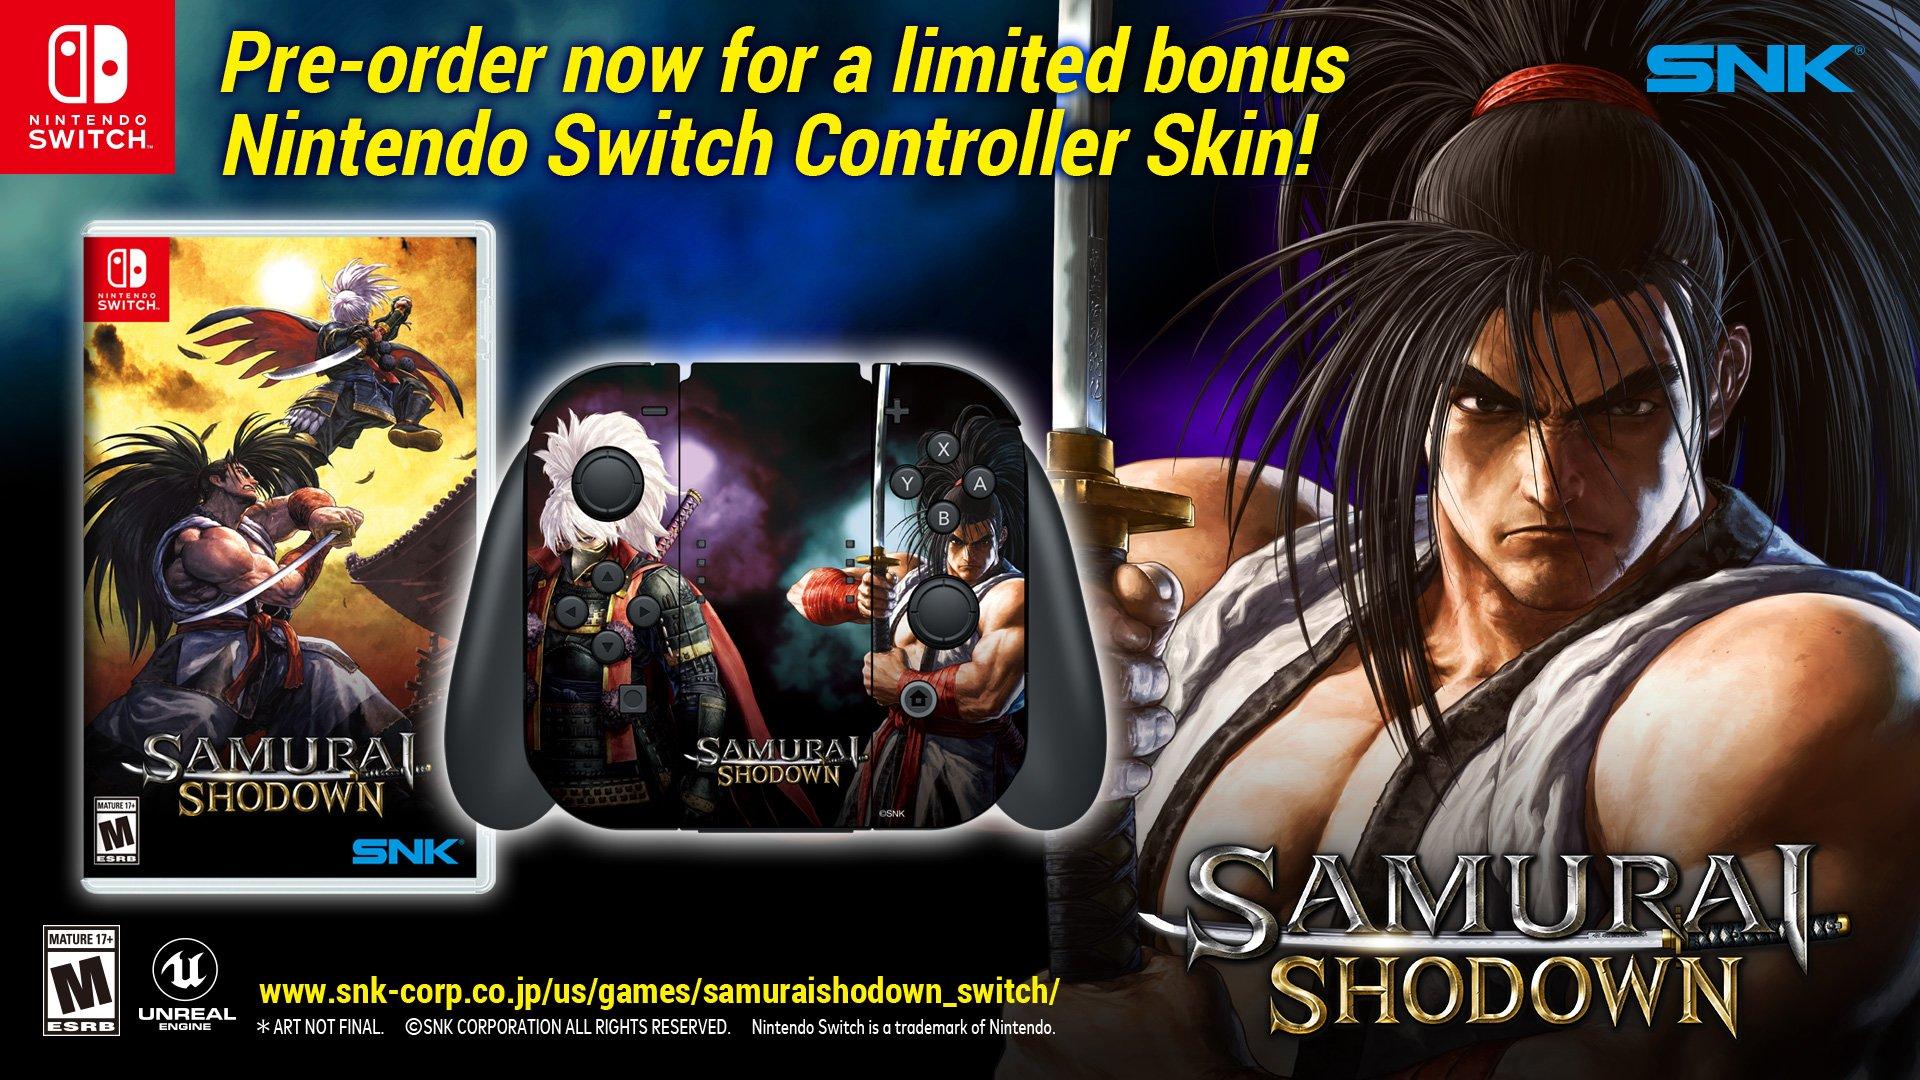 samurai shodown switch release